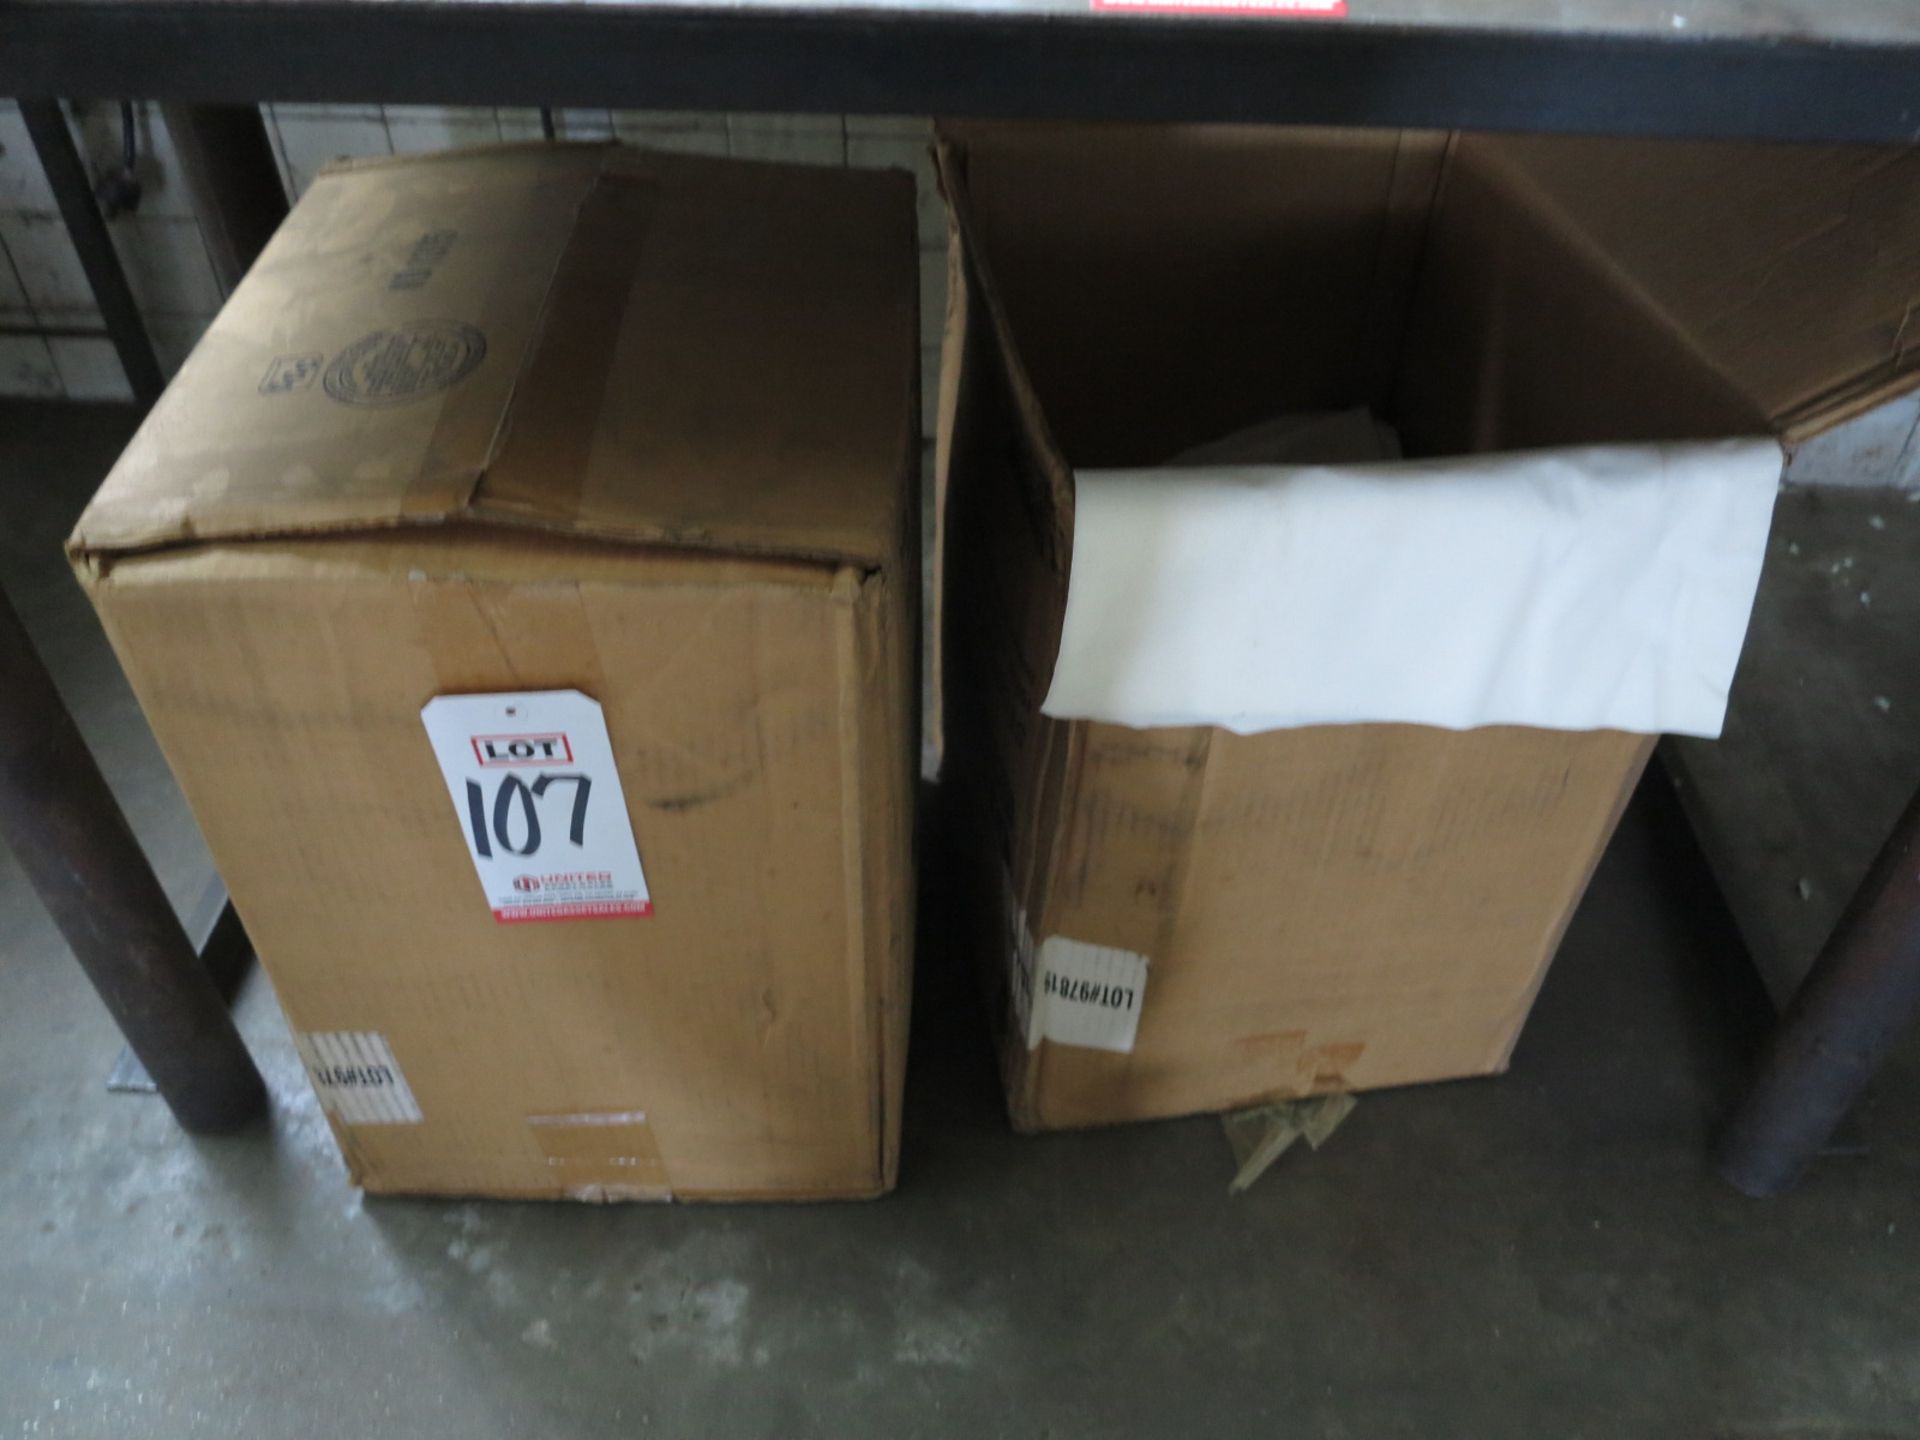 LOT - (1-1/2) BOXES OF PAPER SHOP TOWELS